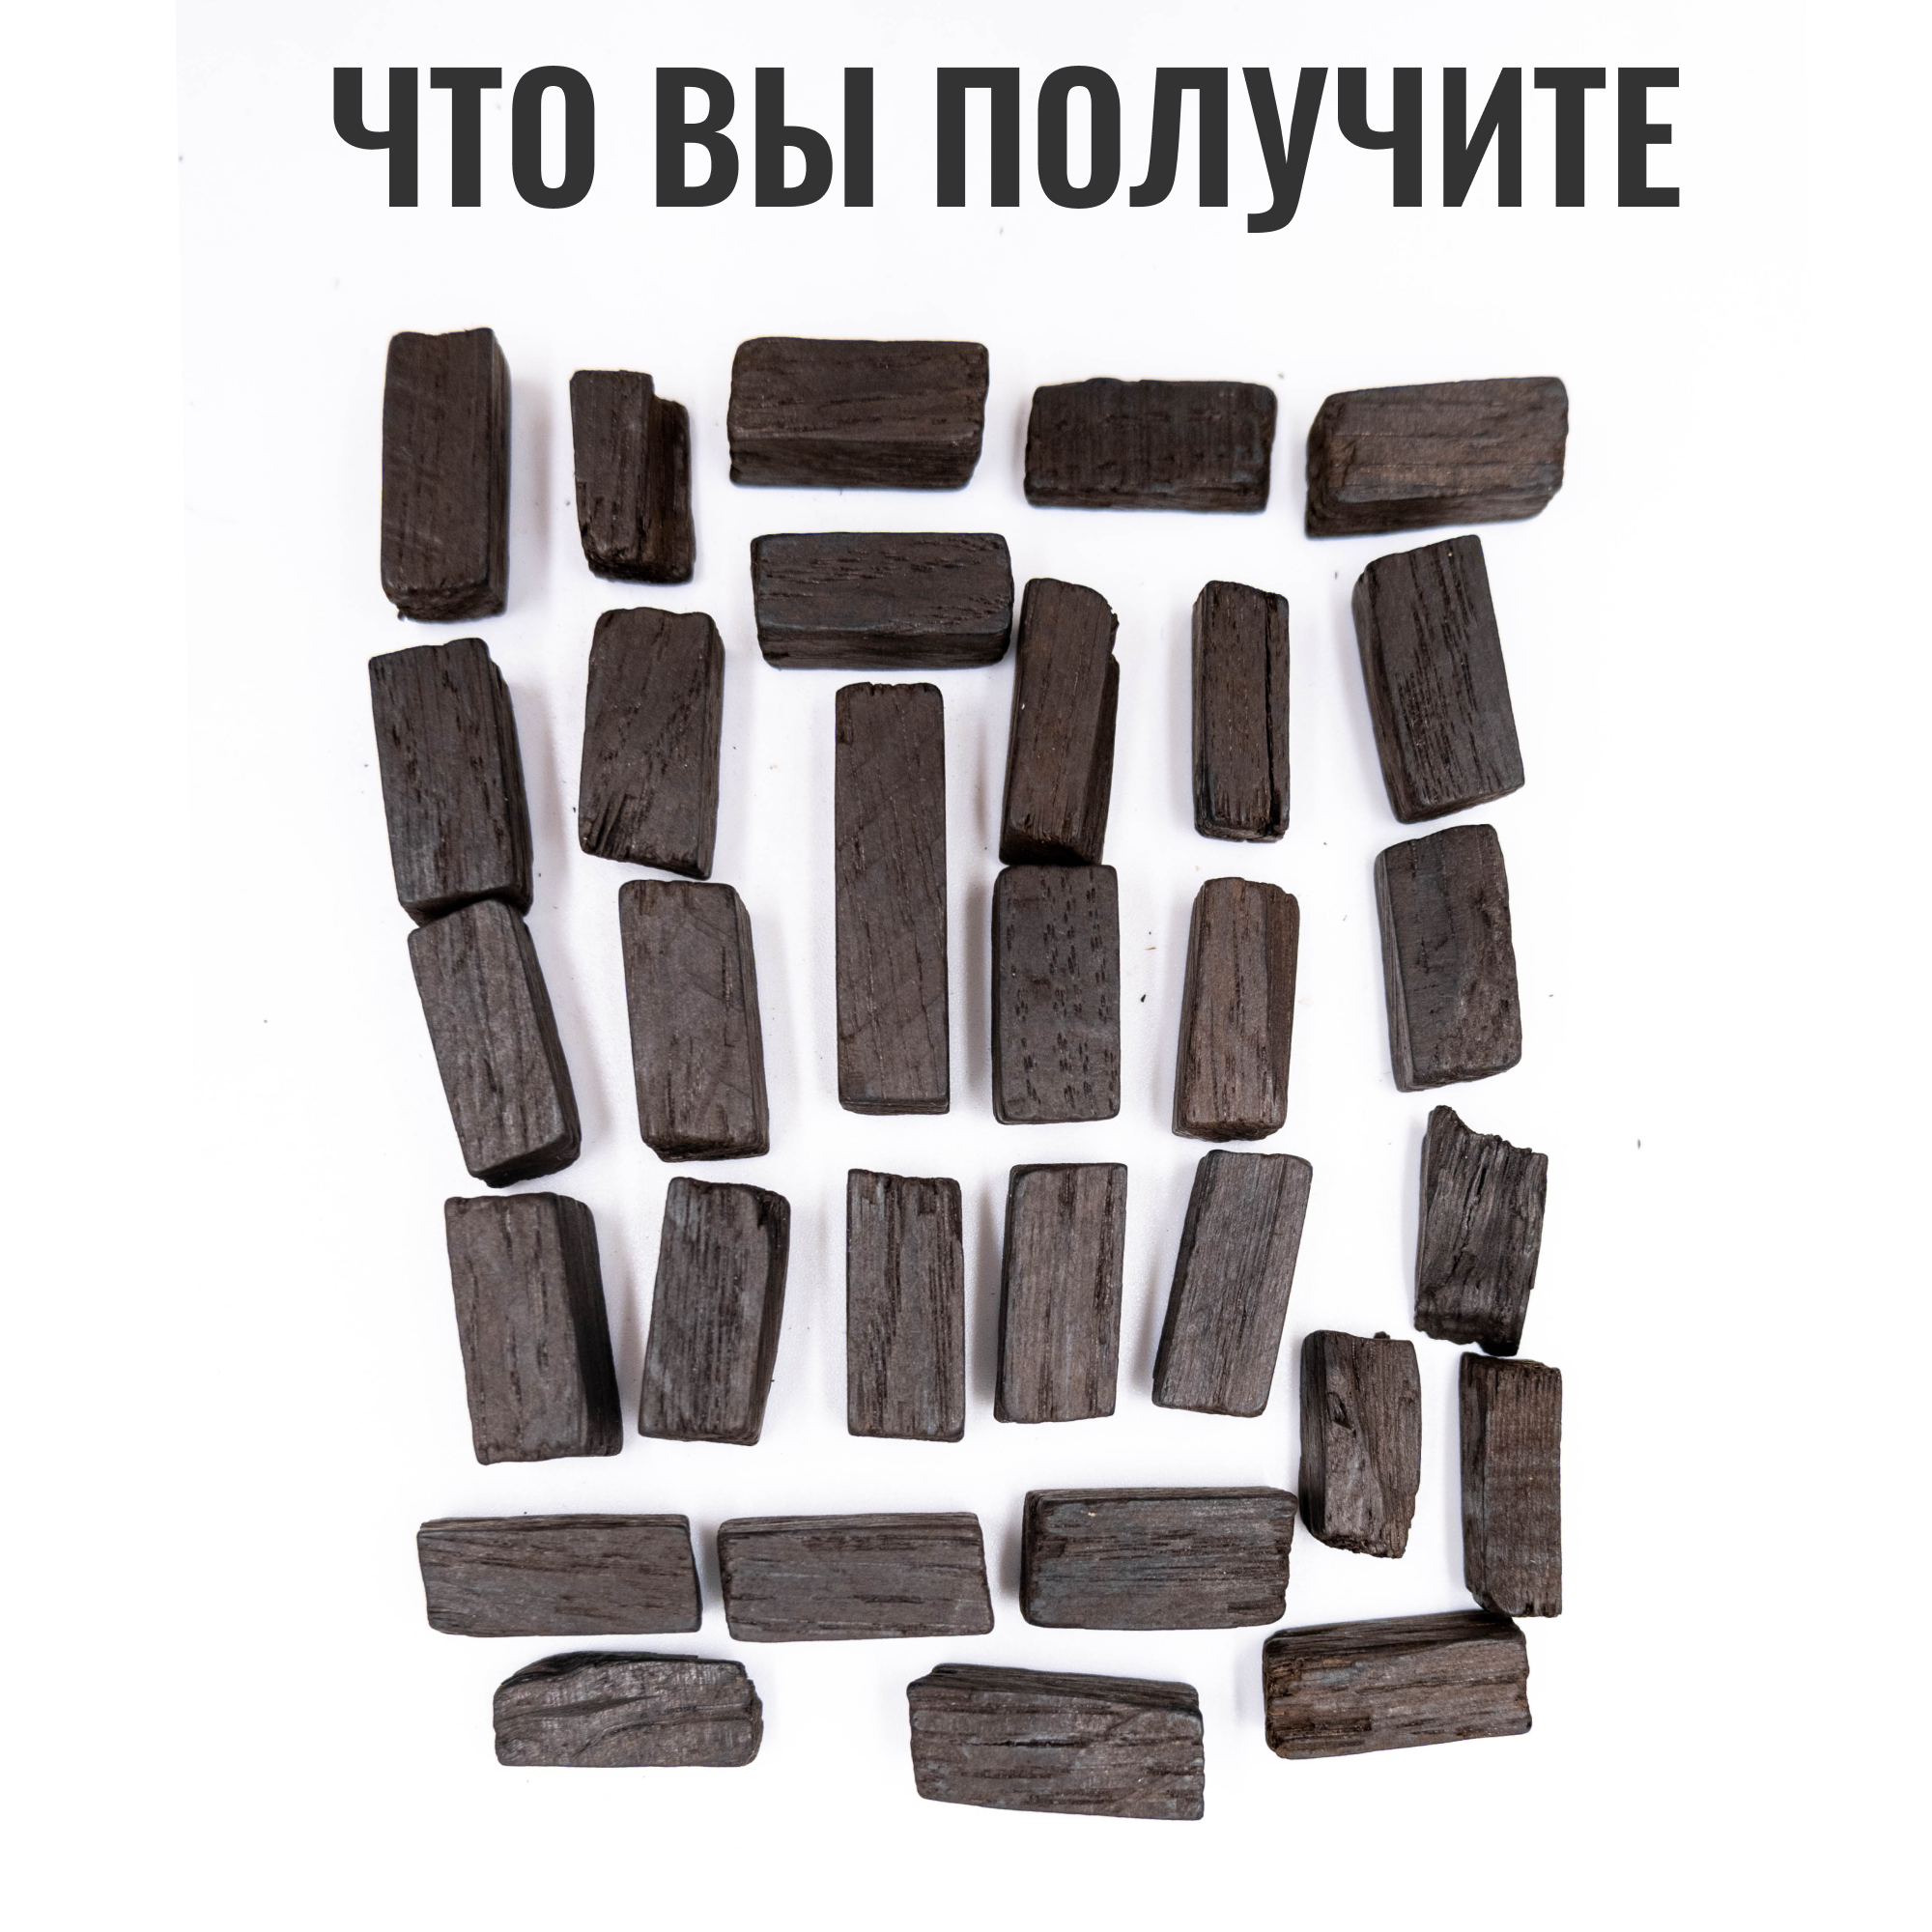 Кубики сербские дубовые для настаивания самогона 2 вида обжига /щепа дубовая